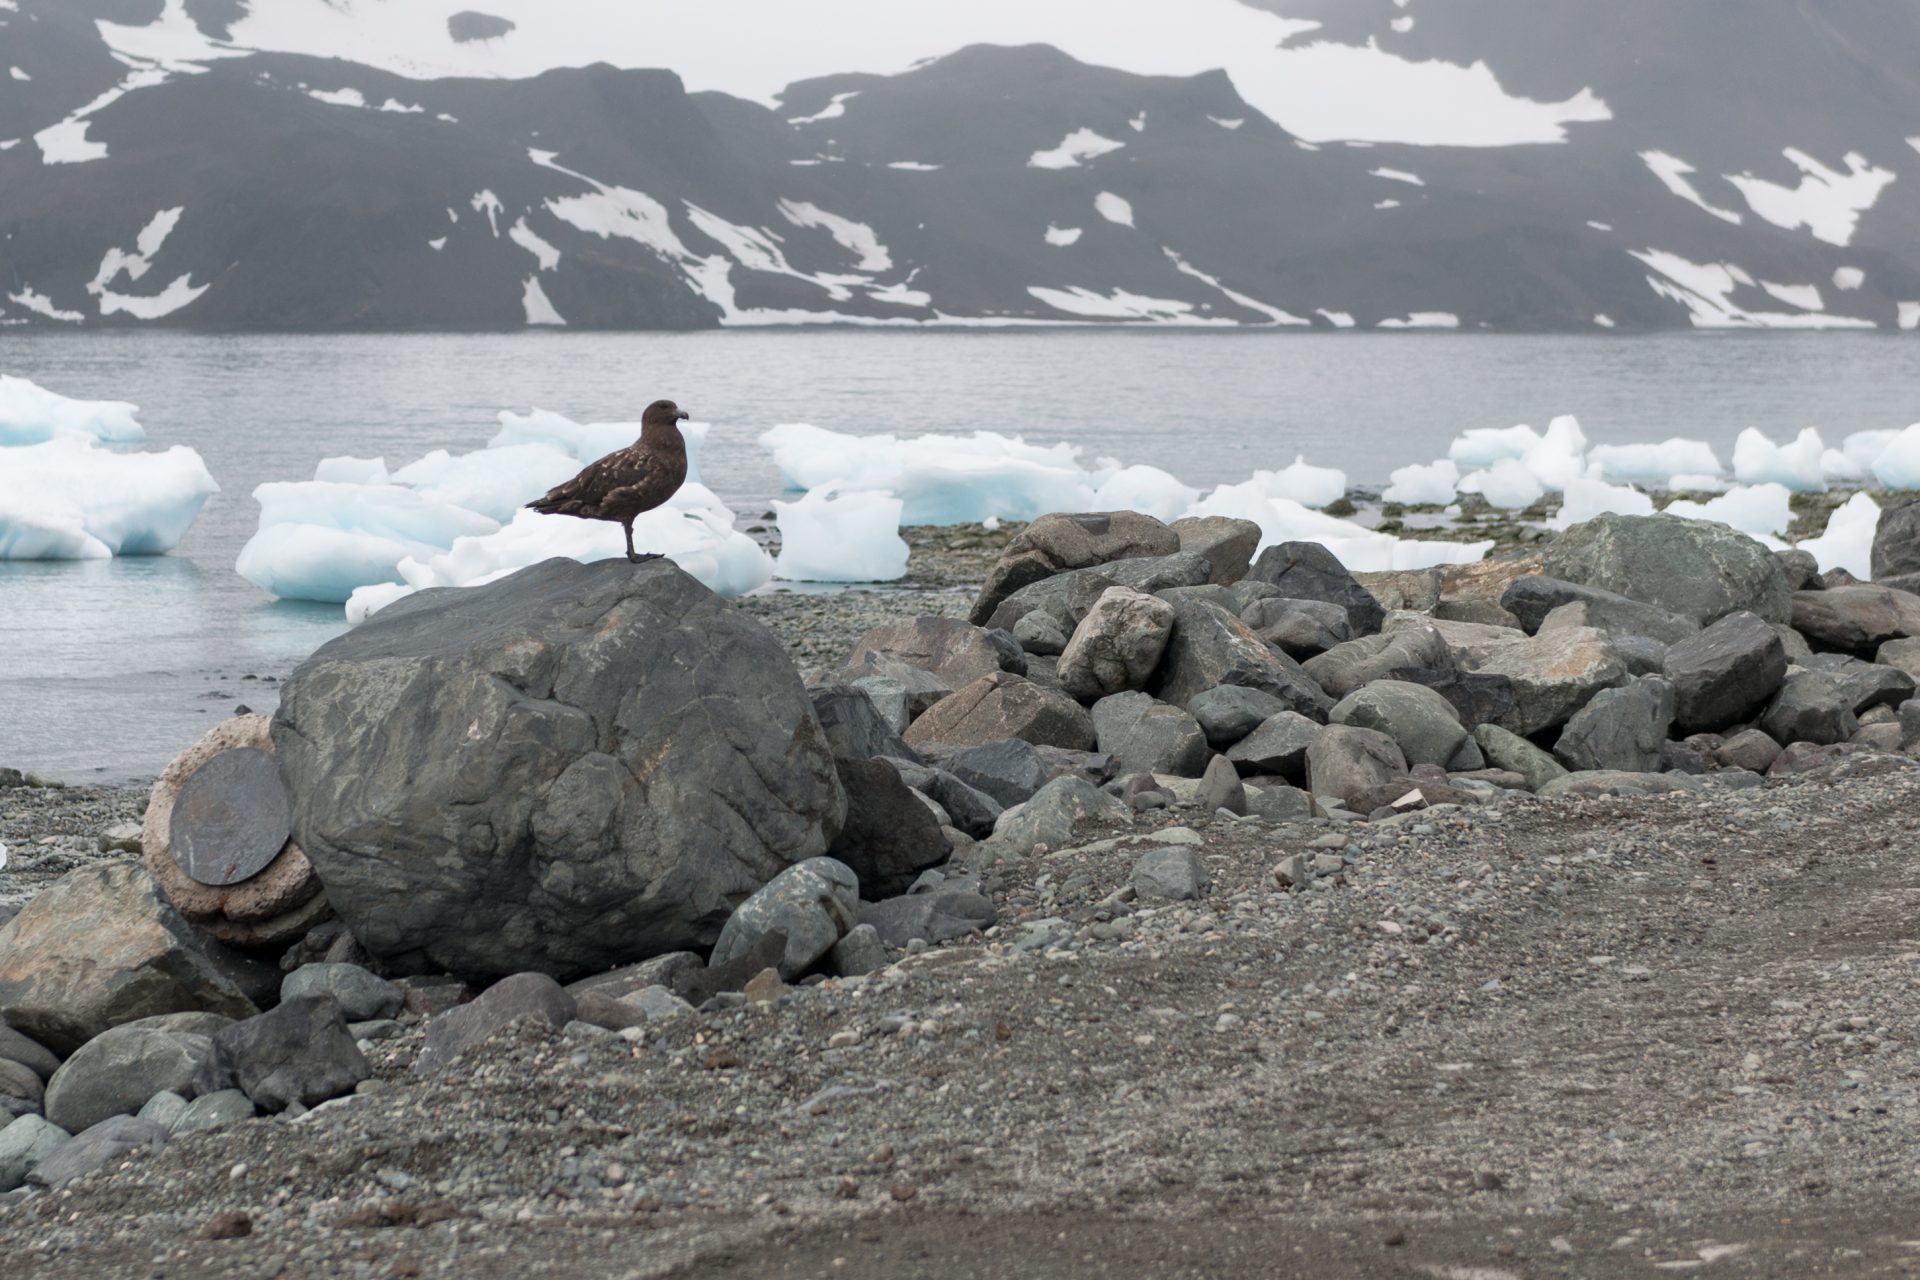 Dead birds in Antarctica